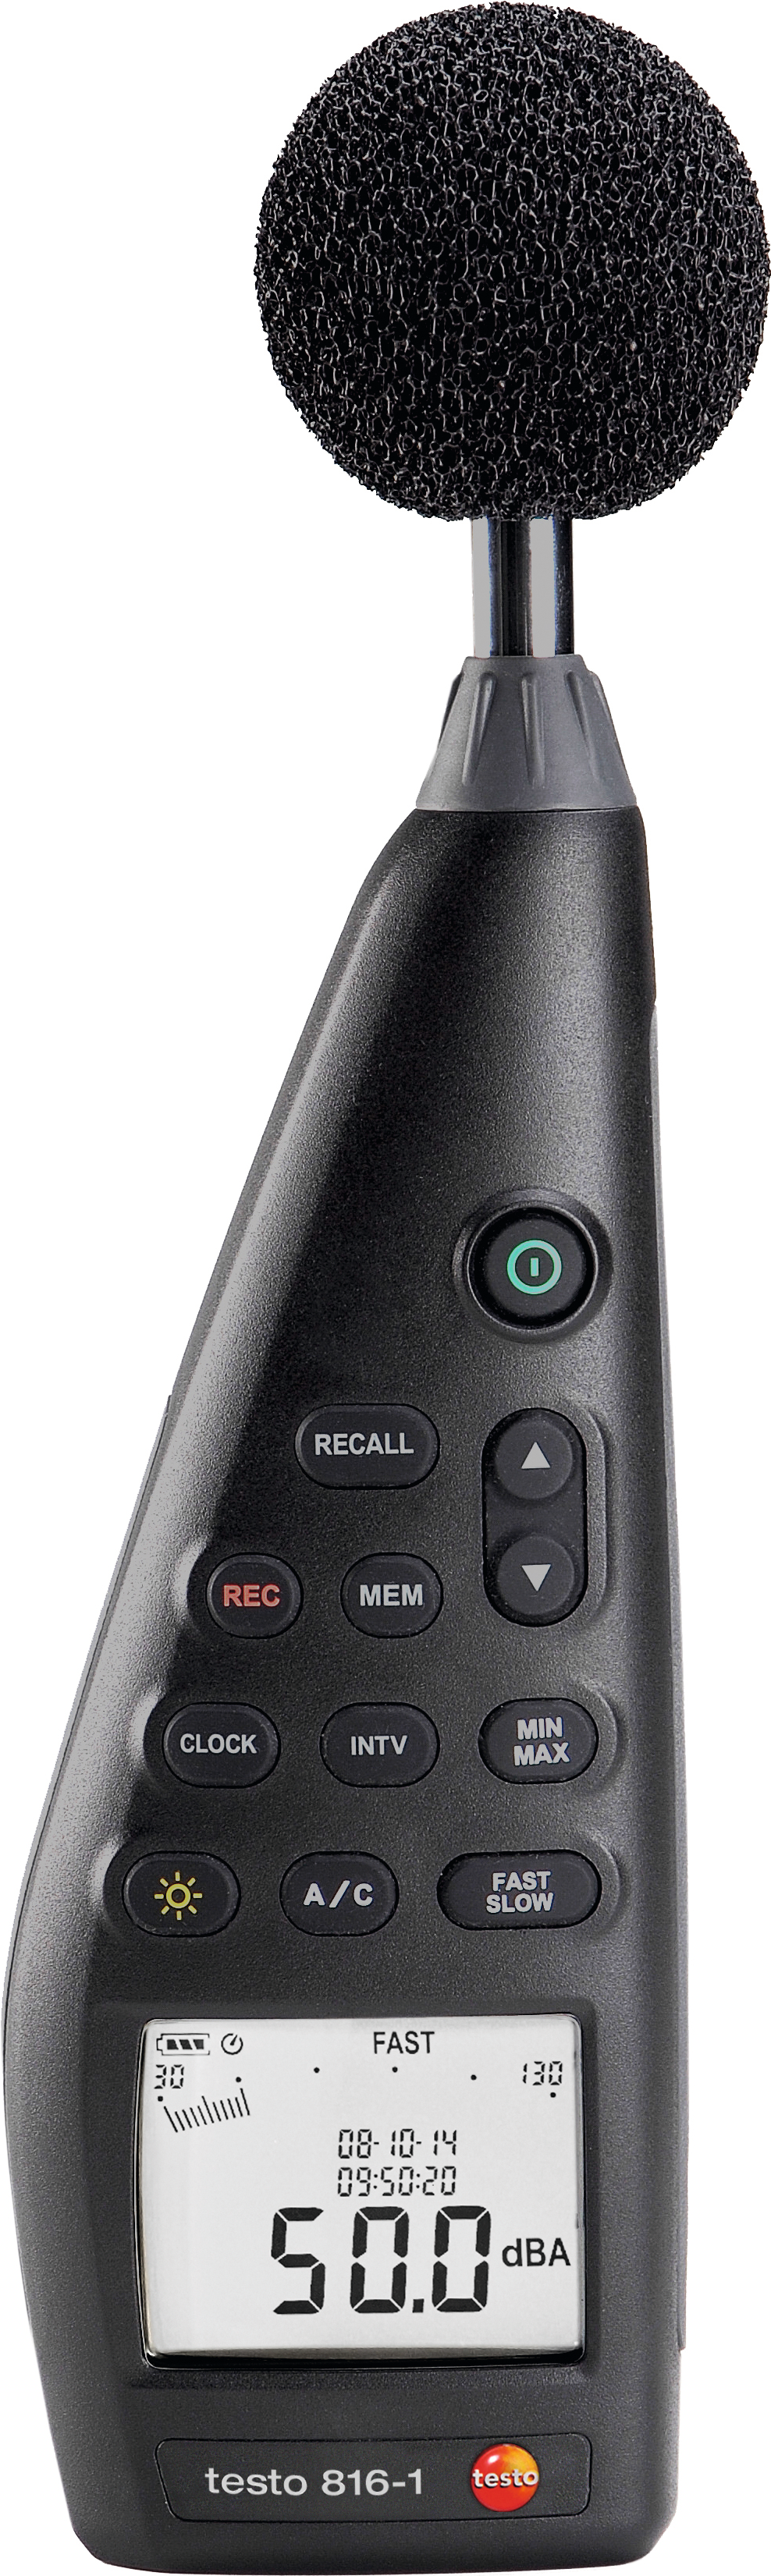 Schallpegelmessgerät Digital testo 816-1 mit Mikrofon